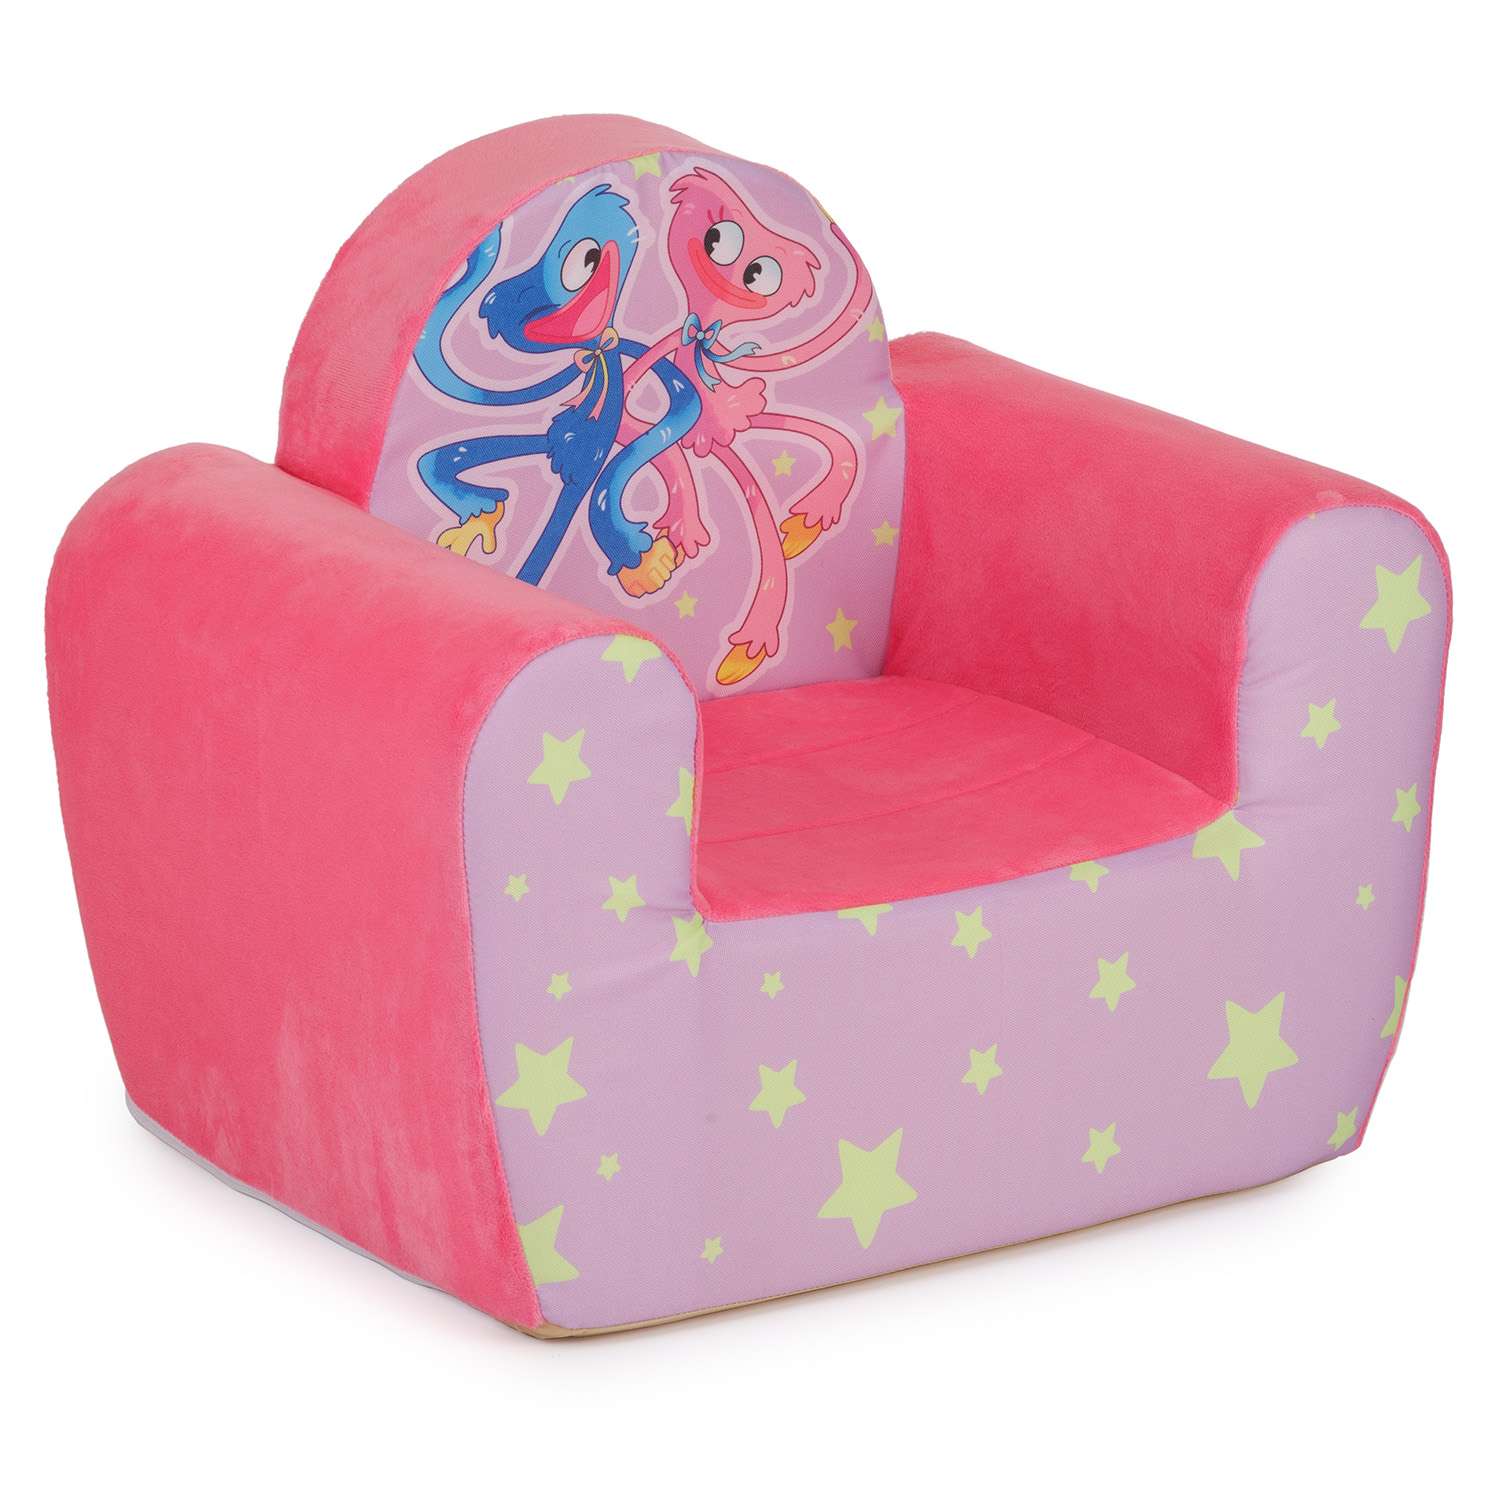 Кресло Тутси мягкое Кис Микс сиреневый модель Детство - фото 3